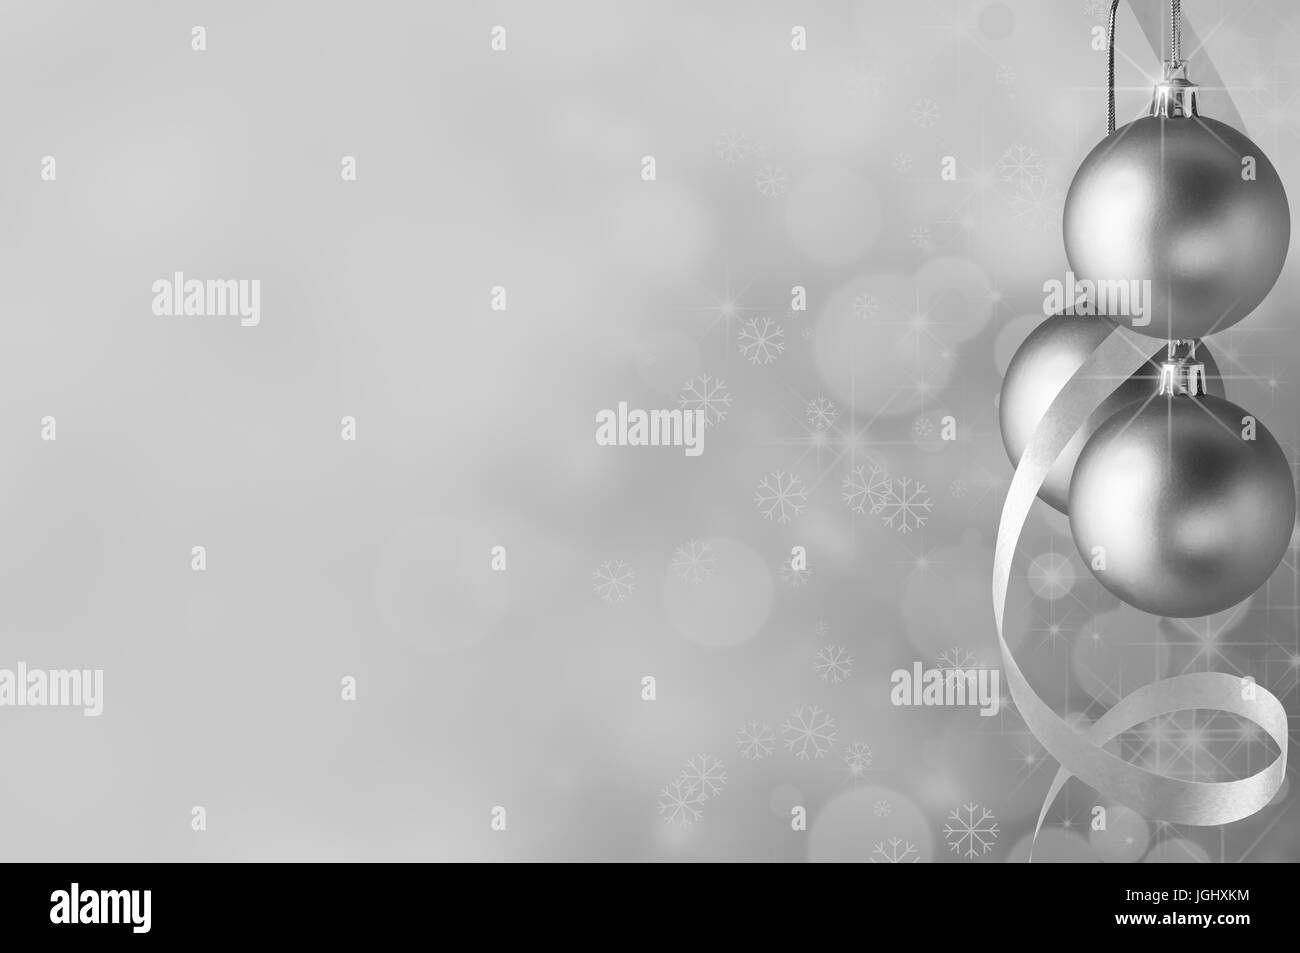 Boules de Noël argent festif et banderoles en spirale sur la droite. Les cercles d'étoiles filantes, glow bokeh et flocons de neige dans l'arrière-plan la décoloration towa Banque D'Images